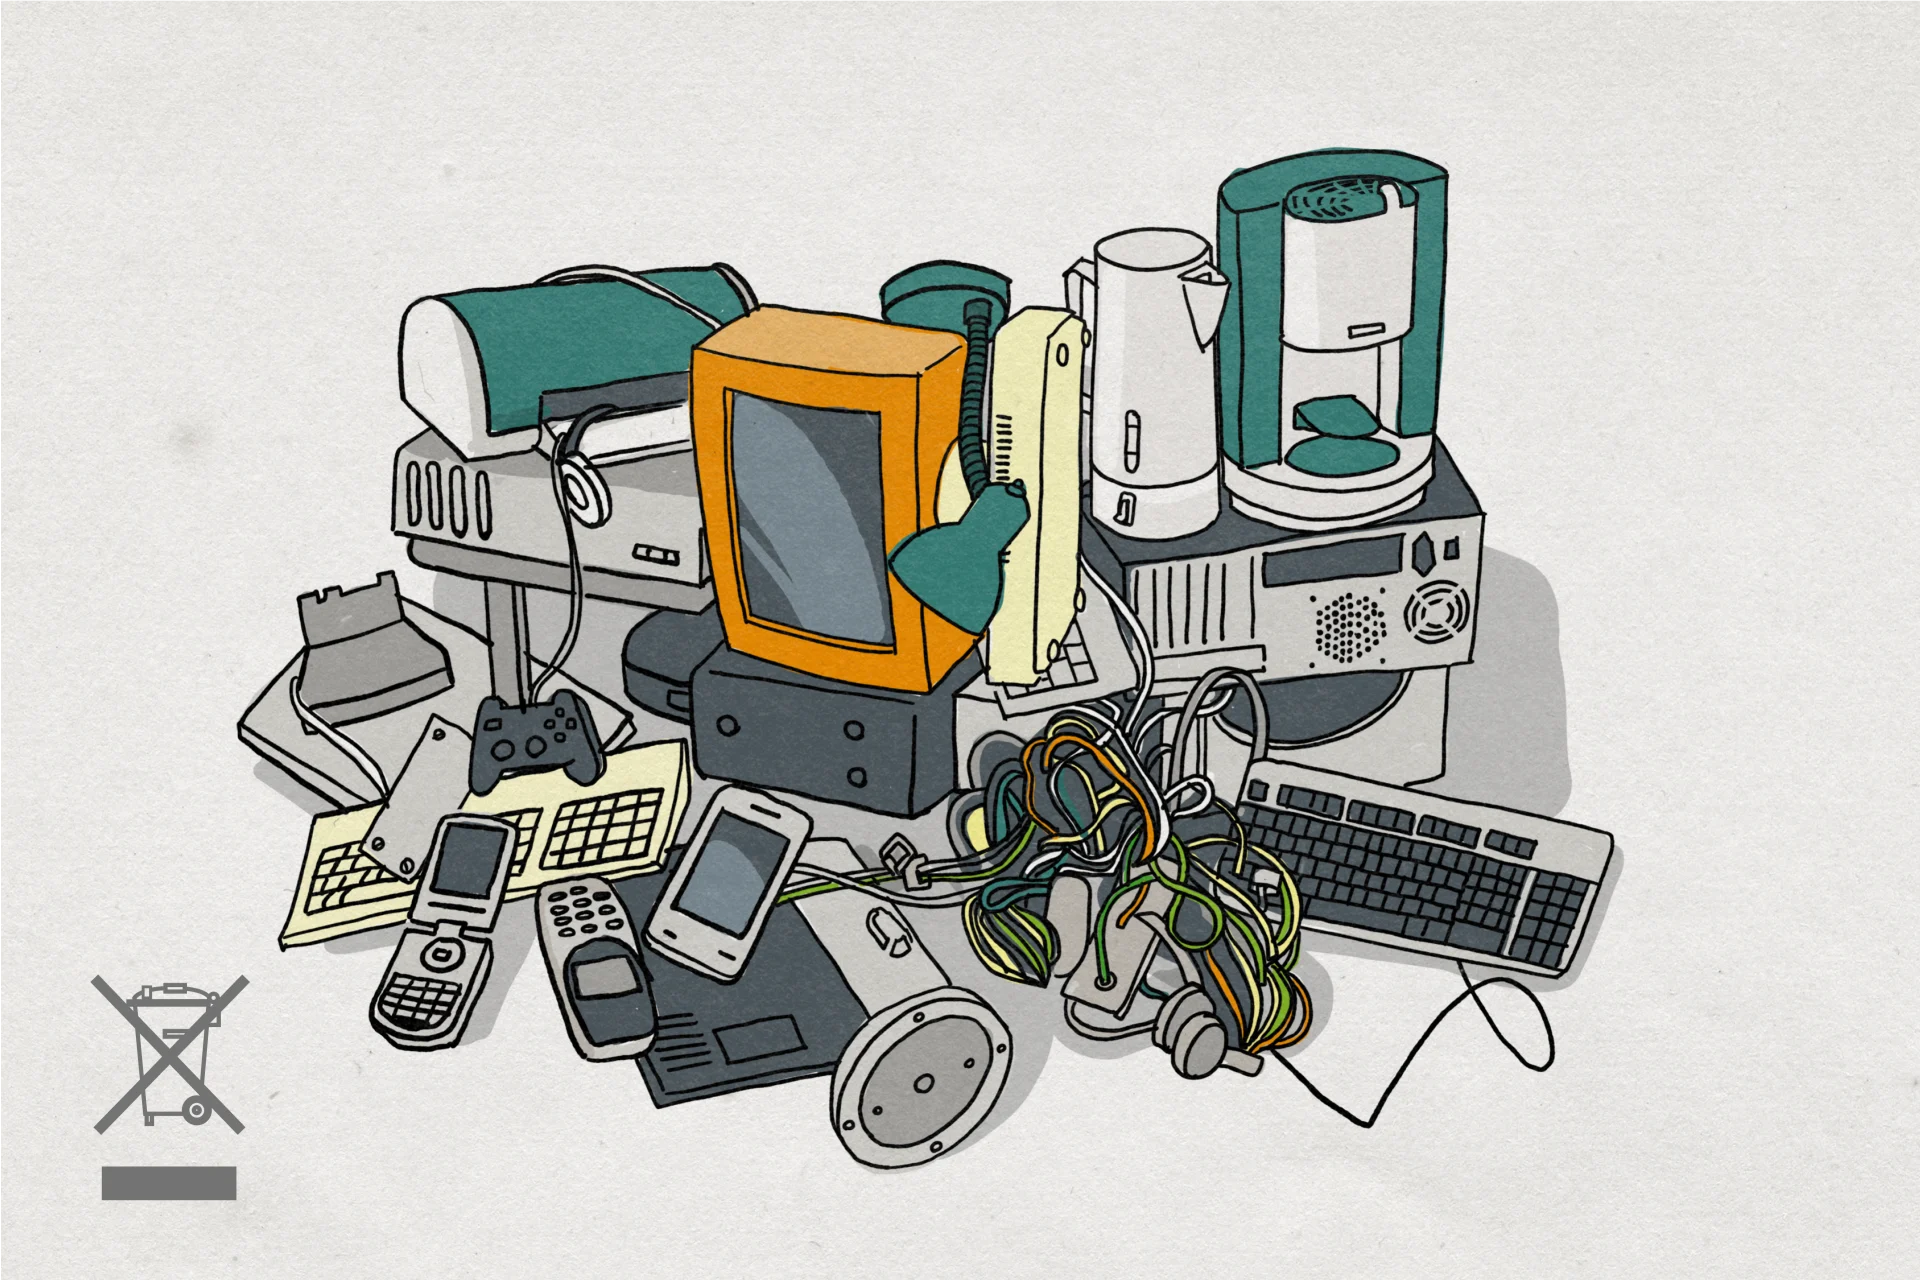 Illustrazione di apparecchi elettronici da intrattenimento, elettrodomestici e lampade